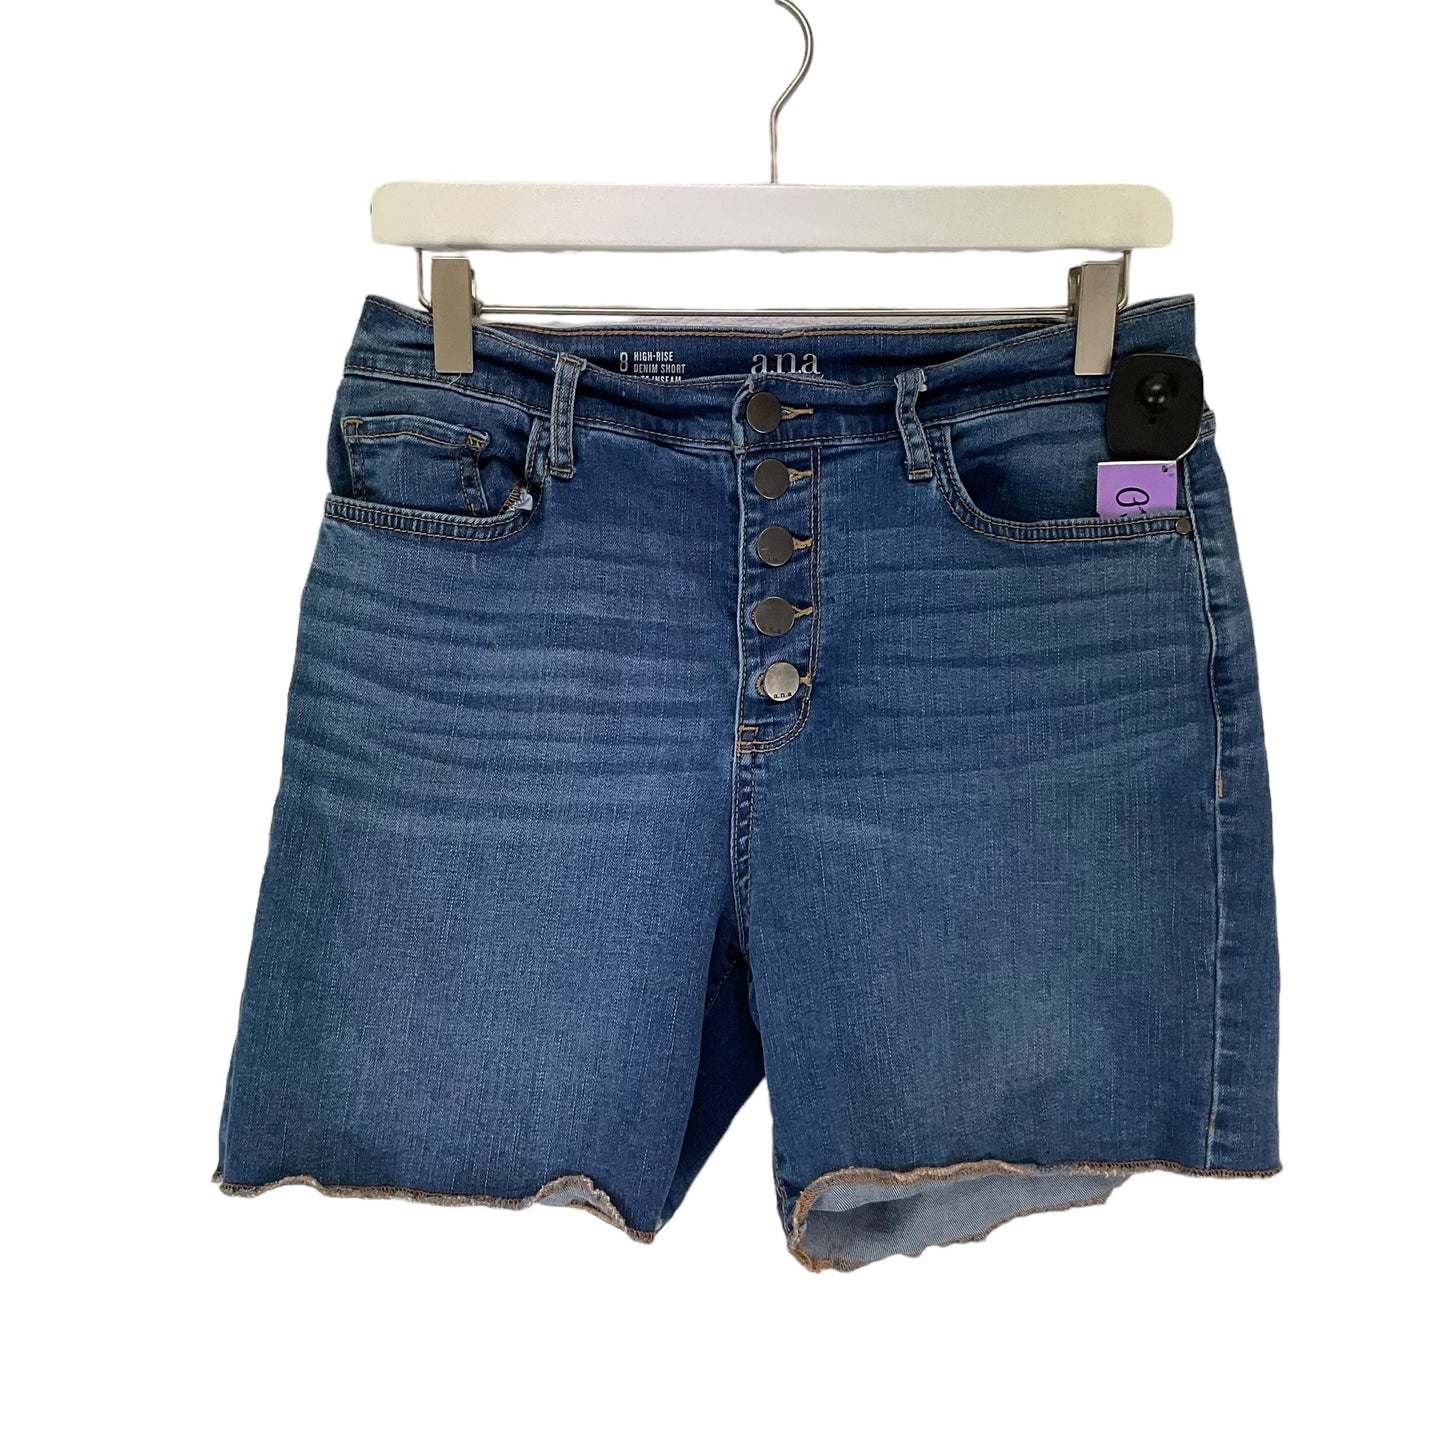 Blue Denim Shorts Ana, Size 8